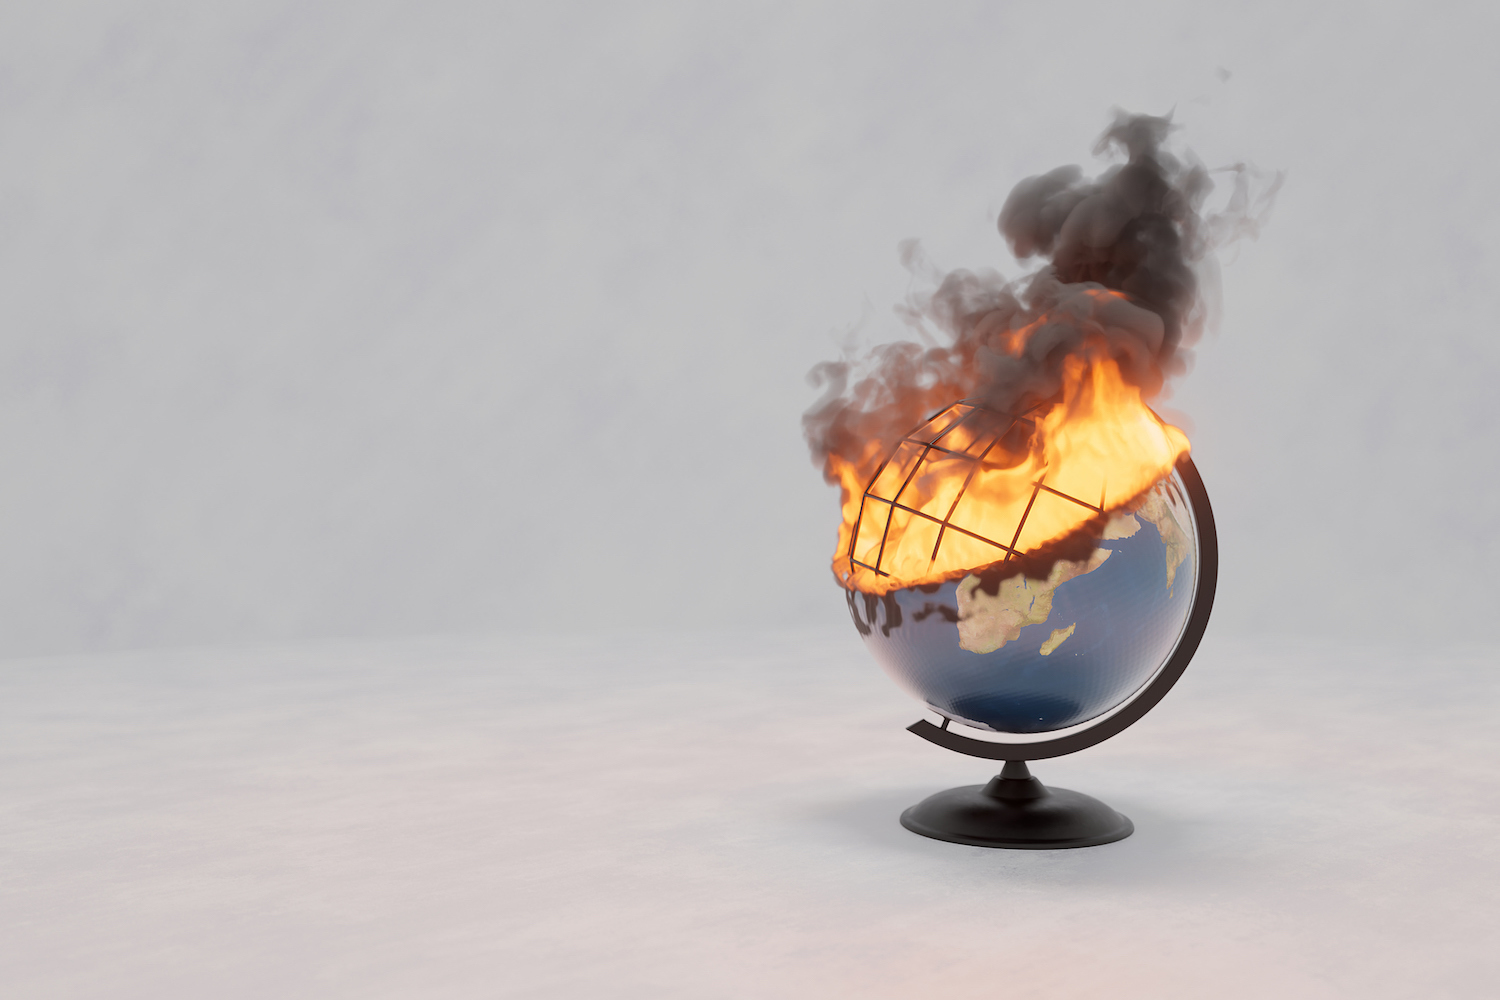 modelo de papel del globo terráqueo en llamas, aislado.  Elementos de la NASA, ilustración 3D